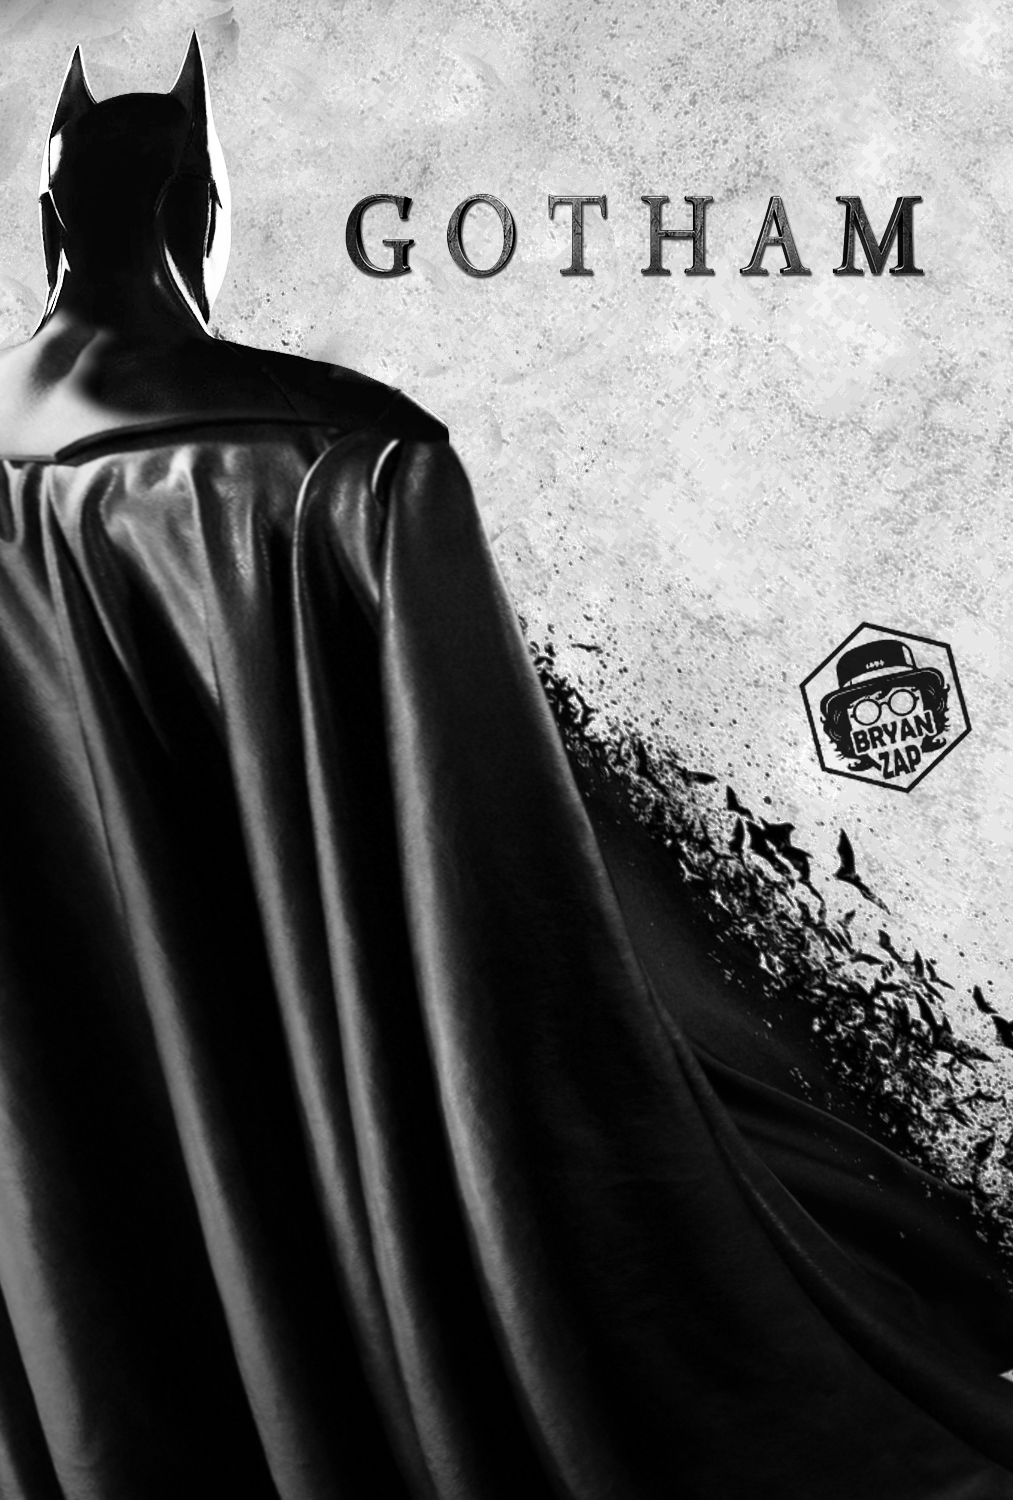 Gotham Batman Poster by Bryanzap on DeviantArt